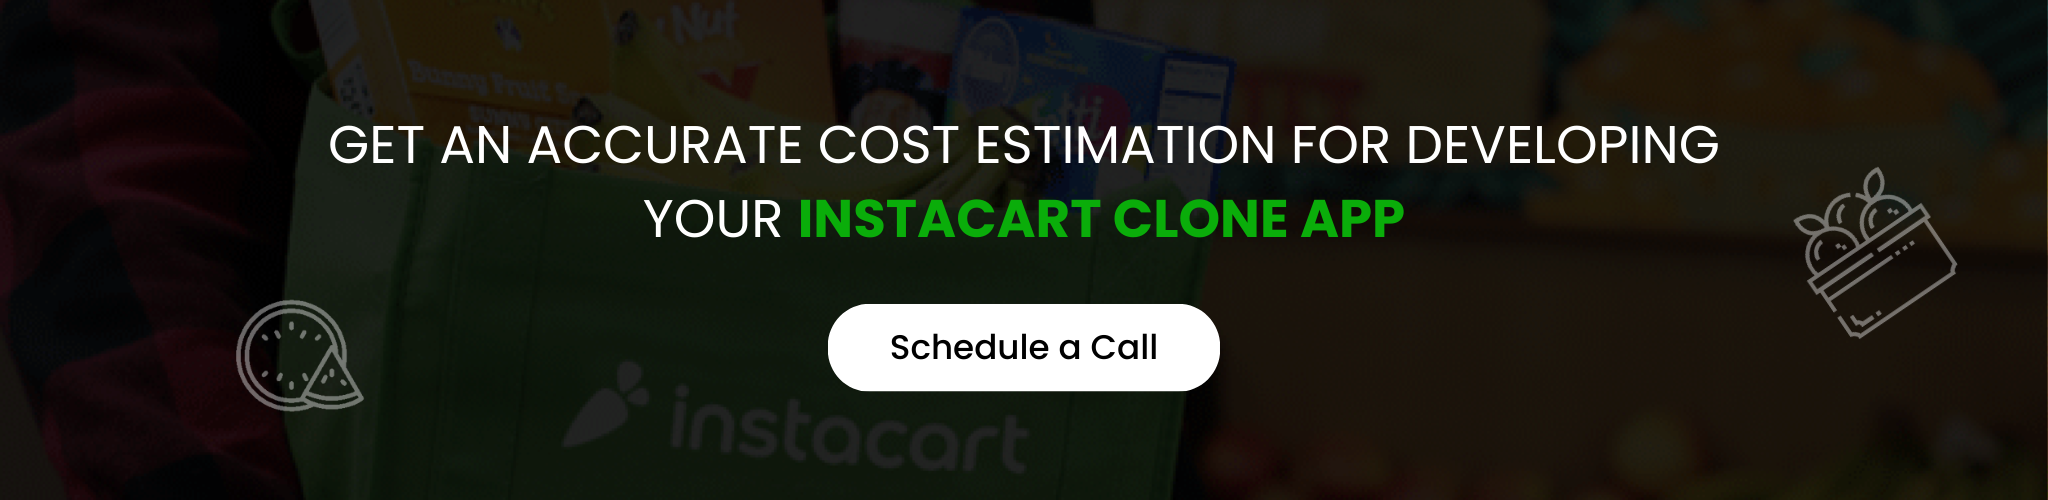 Instacart Clone App